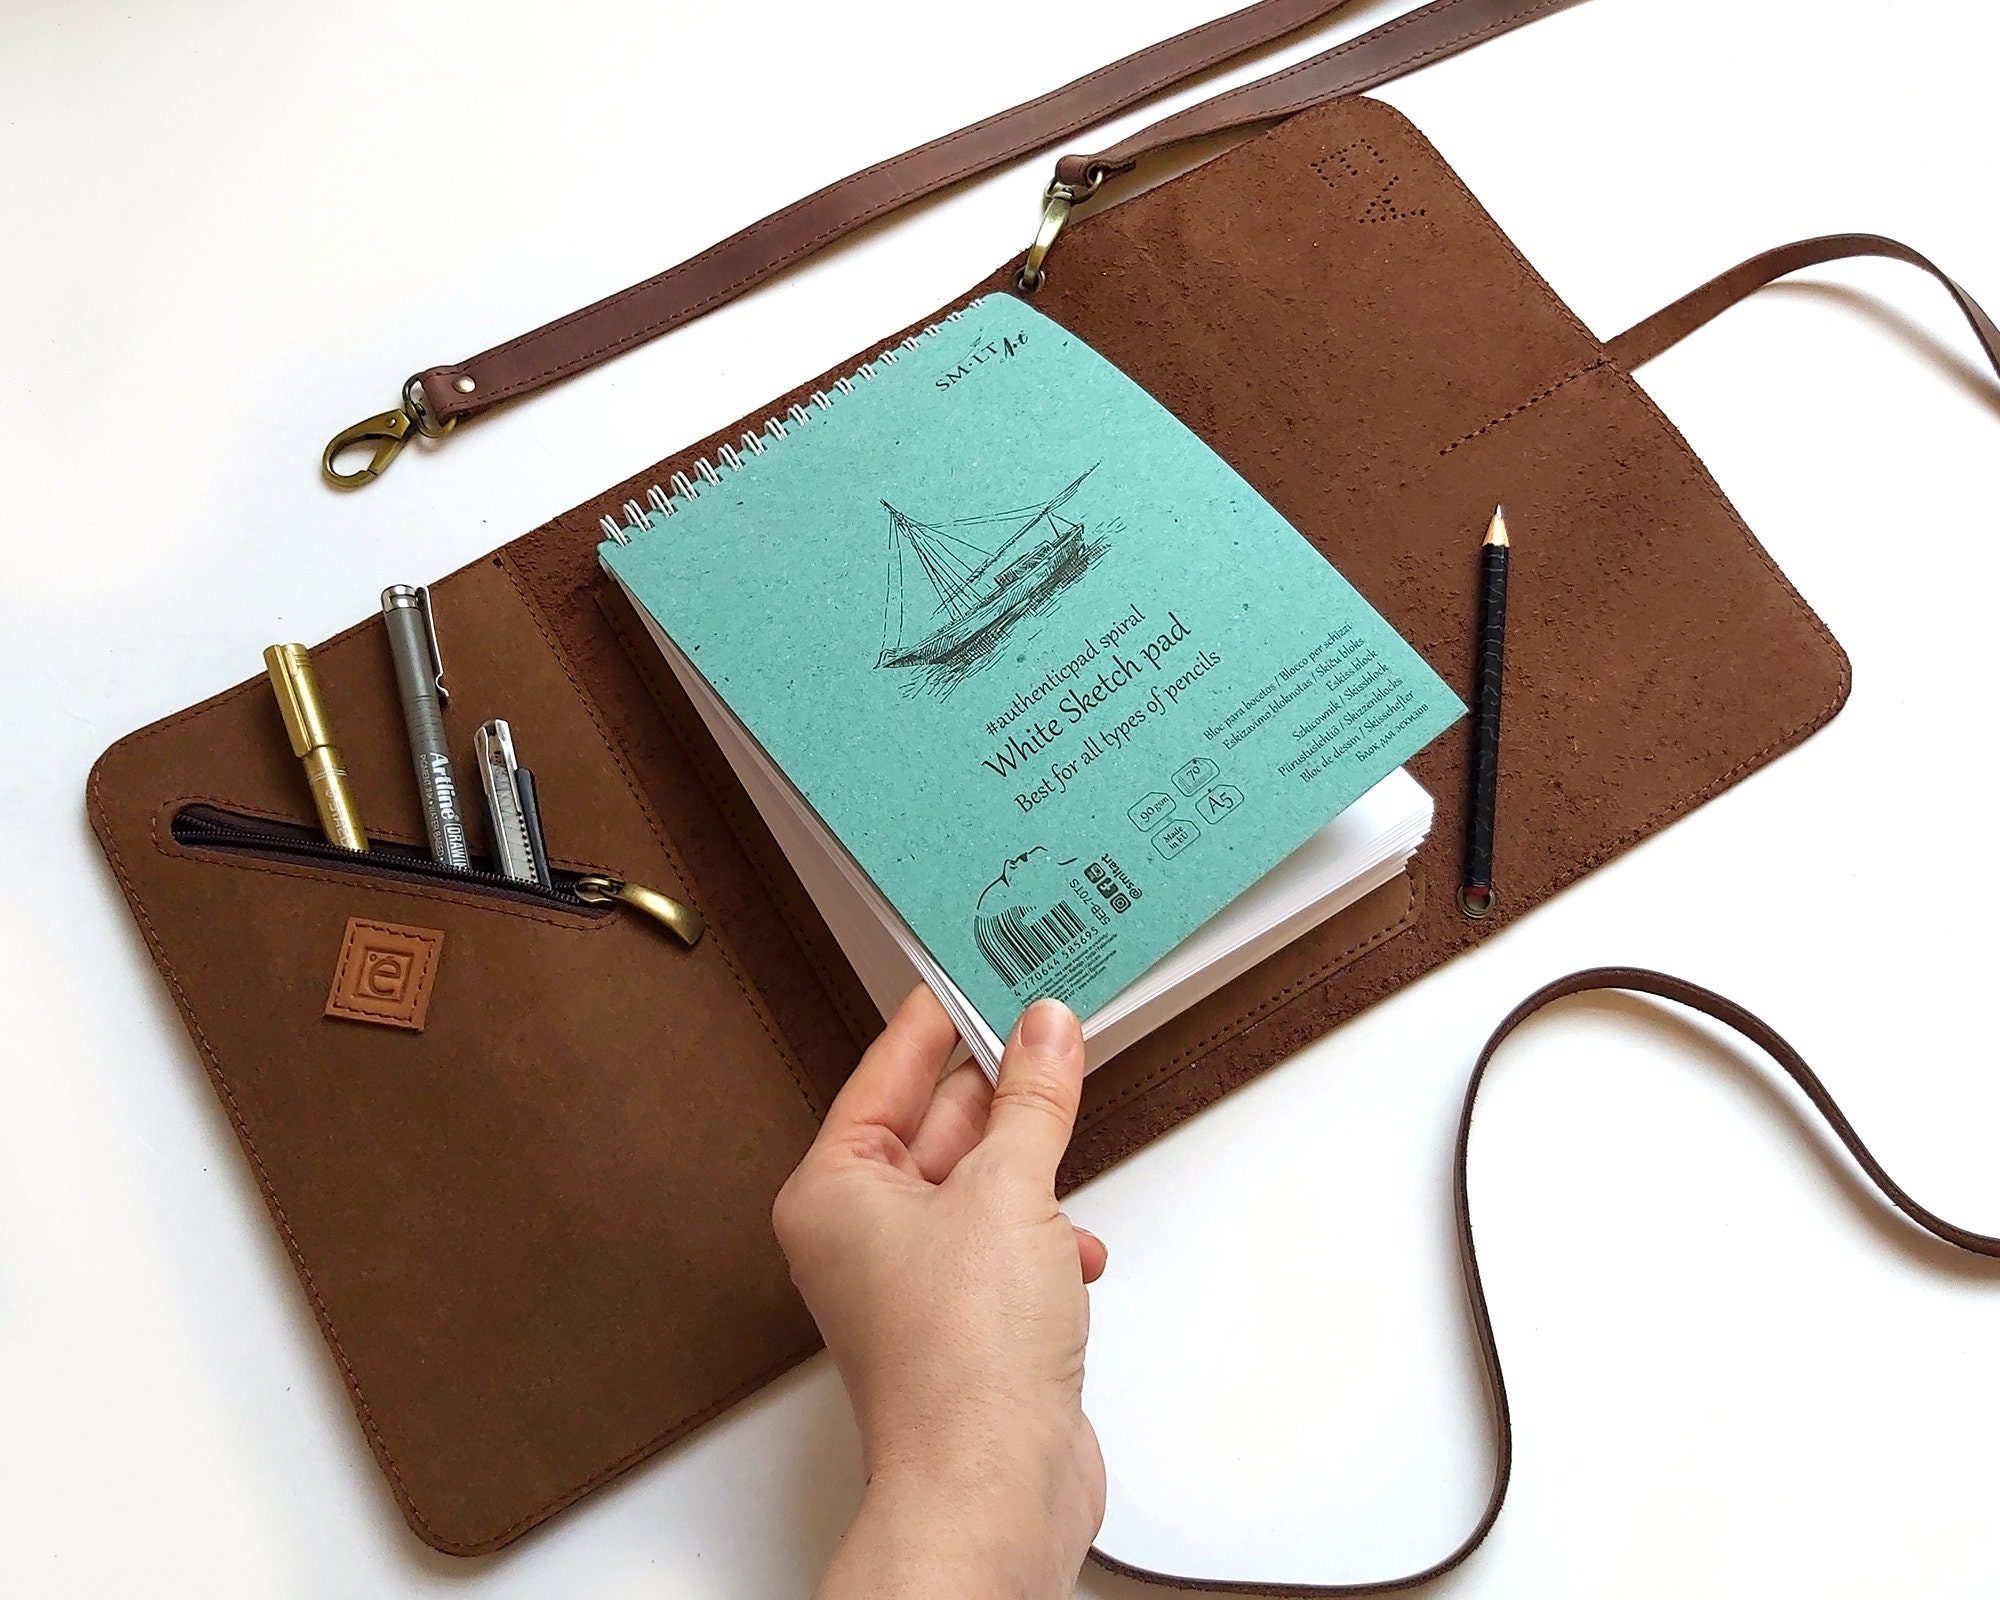 Leather Sketchpad Holder, Pen Pencil Case, Refillable Sketchbook